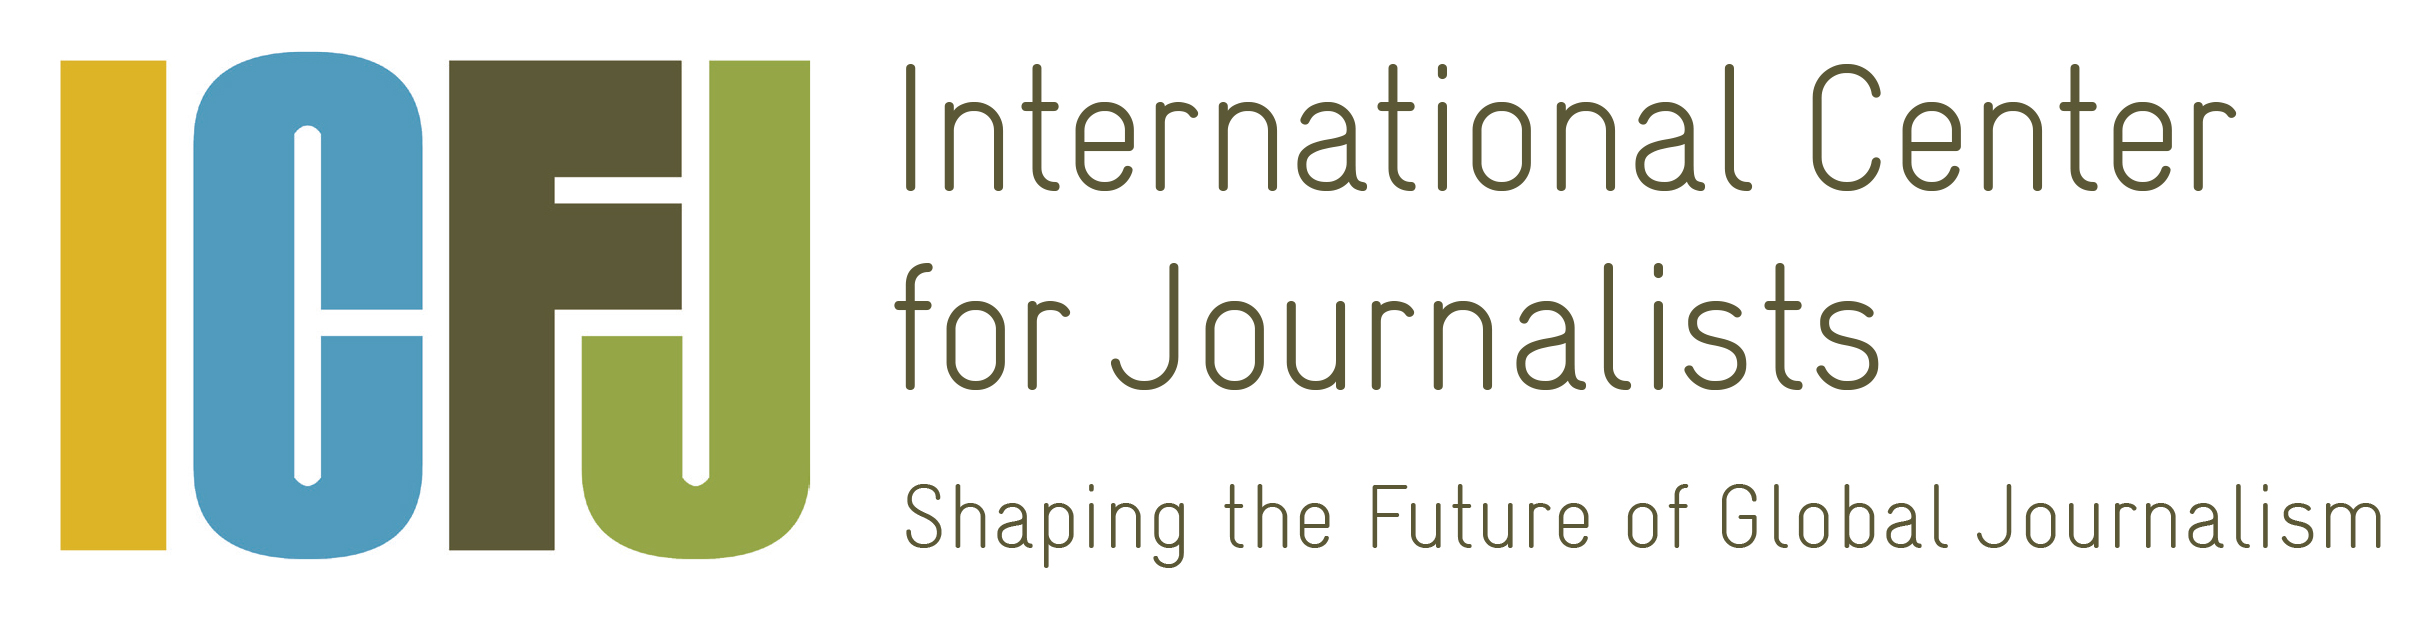 ICFJ logo tagline 2016 CMYK